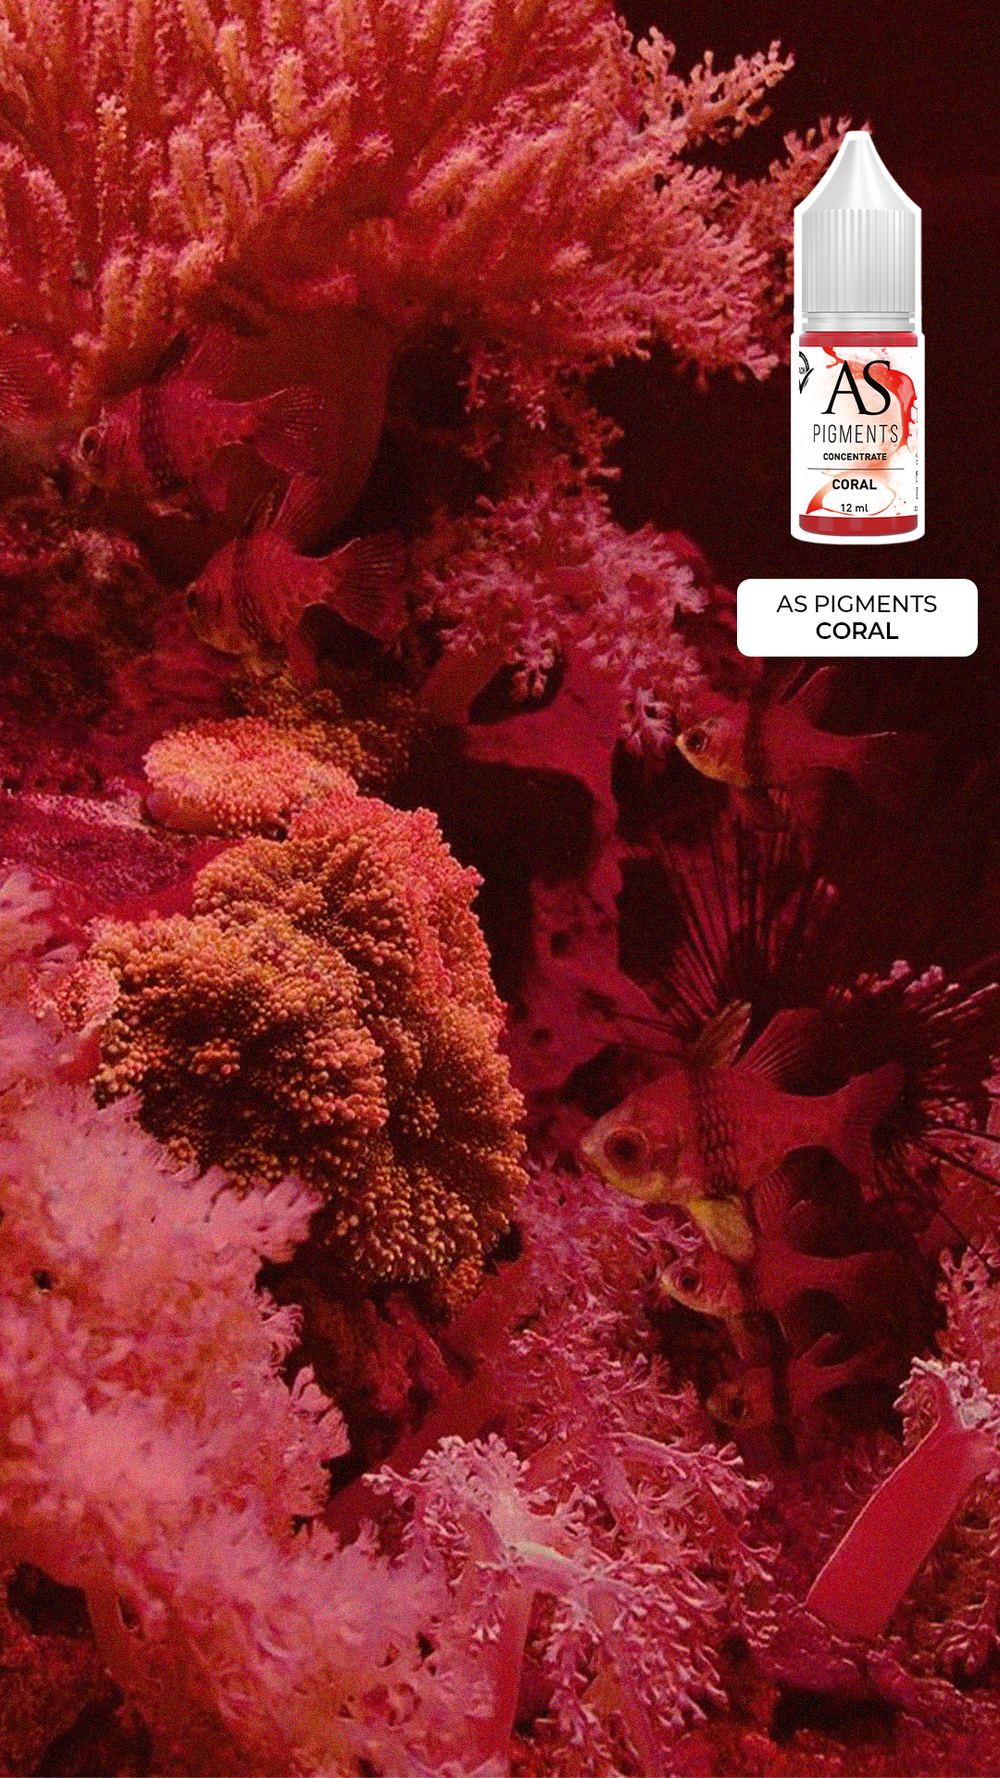 Пигмент для губ Coral (Коралл) от Алины Шаховой концентрат